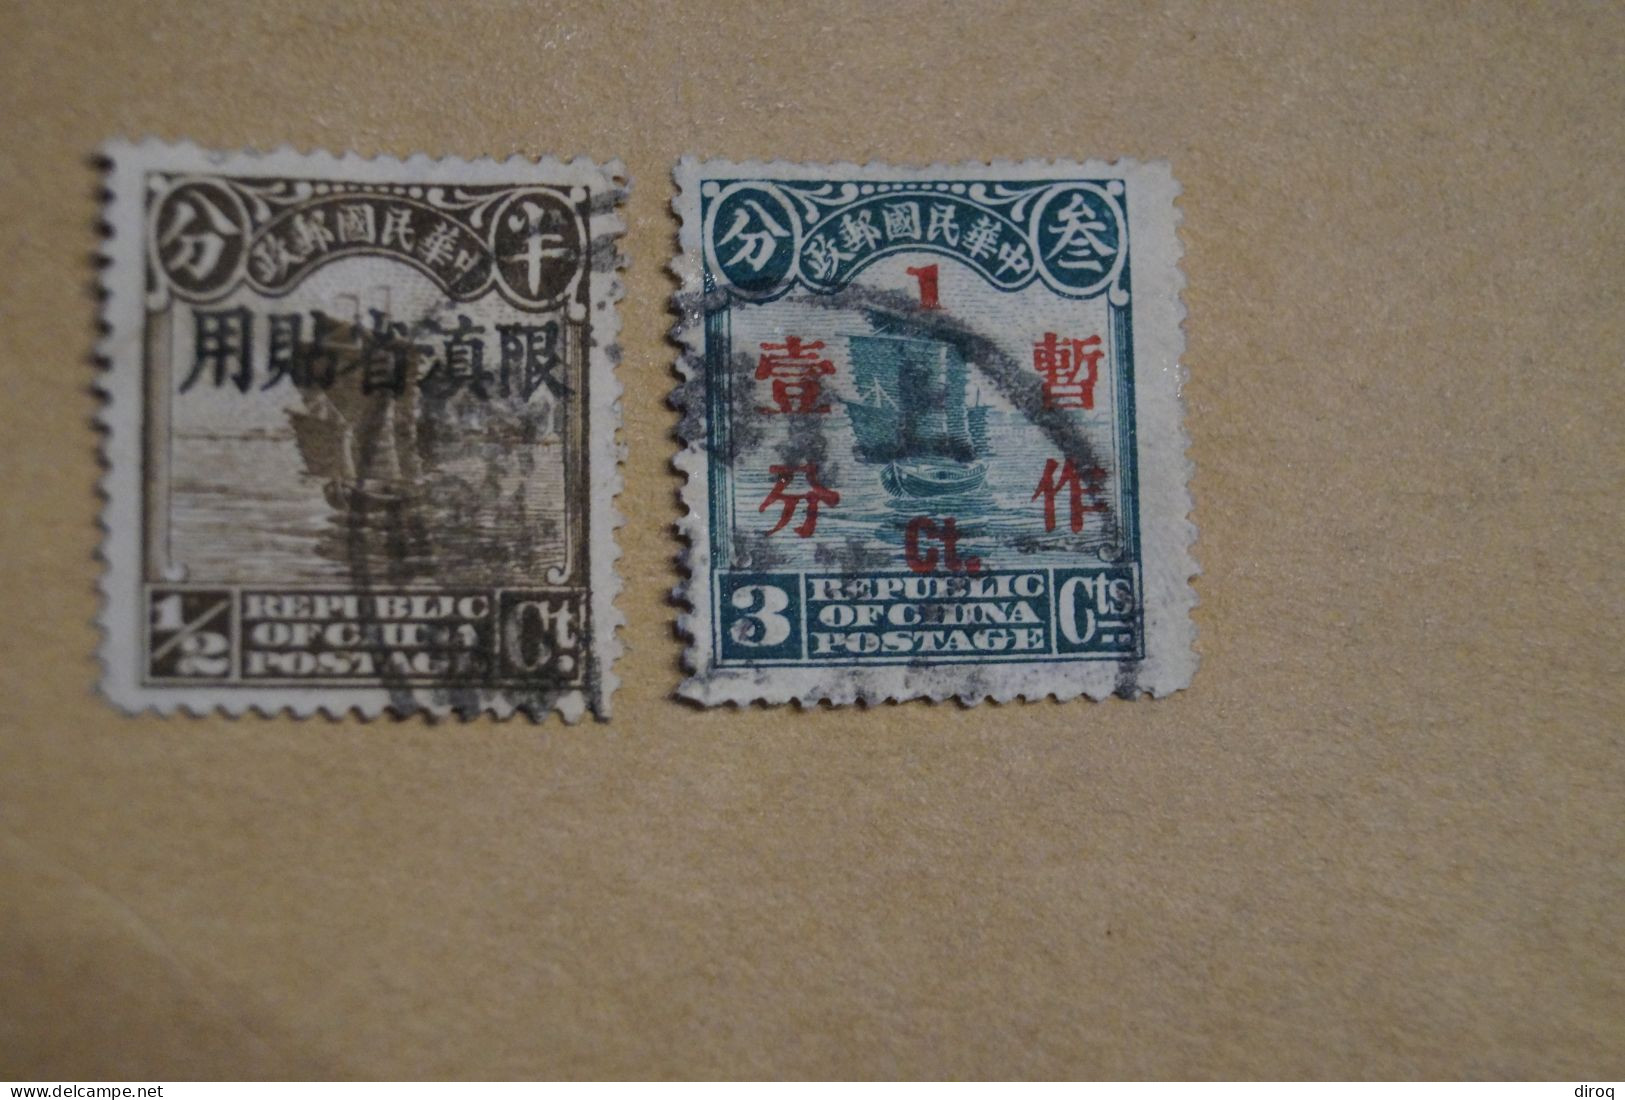 Chine,Chines,lot De 48 Timbres Oblitérés,1913 - 1923,certains Avec Surcharges, Pour Collection,collector - 1912-1949 Republic